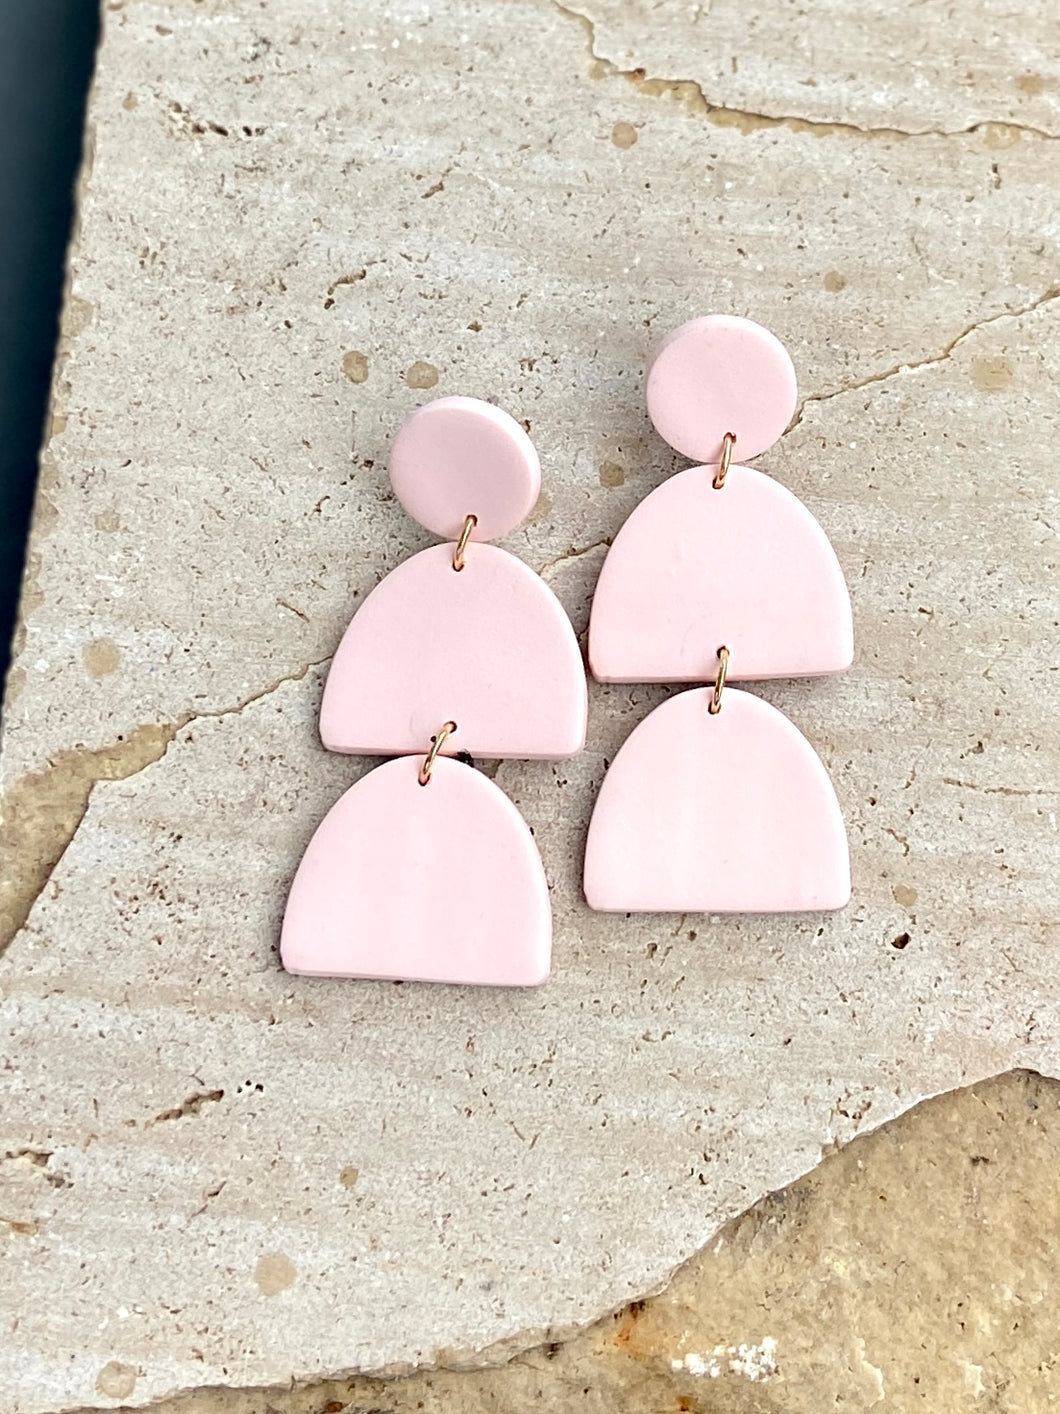 Double Gumdrop Clay earrings